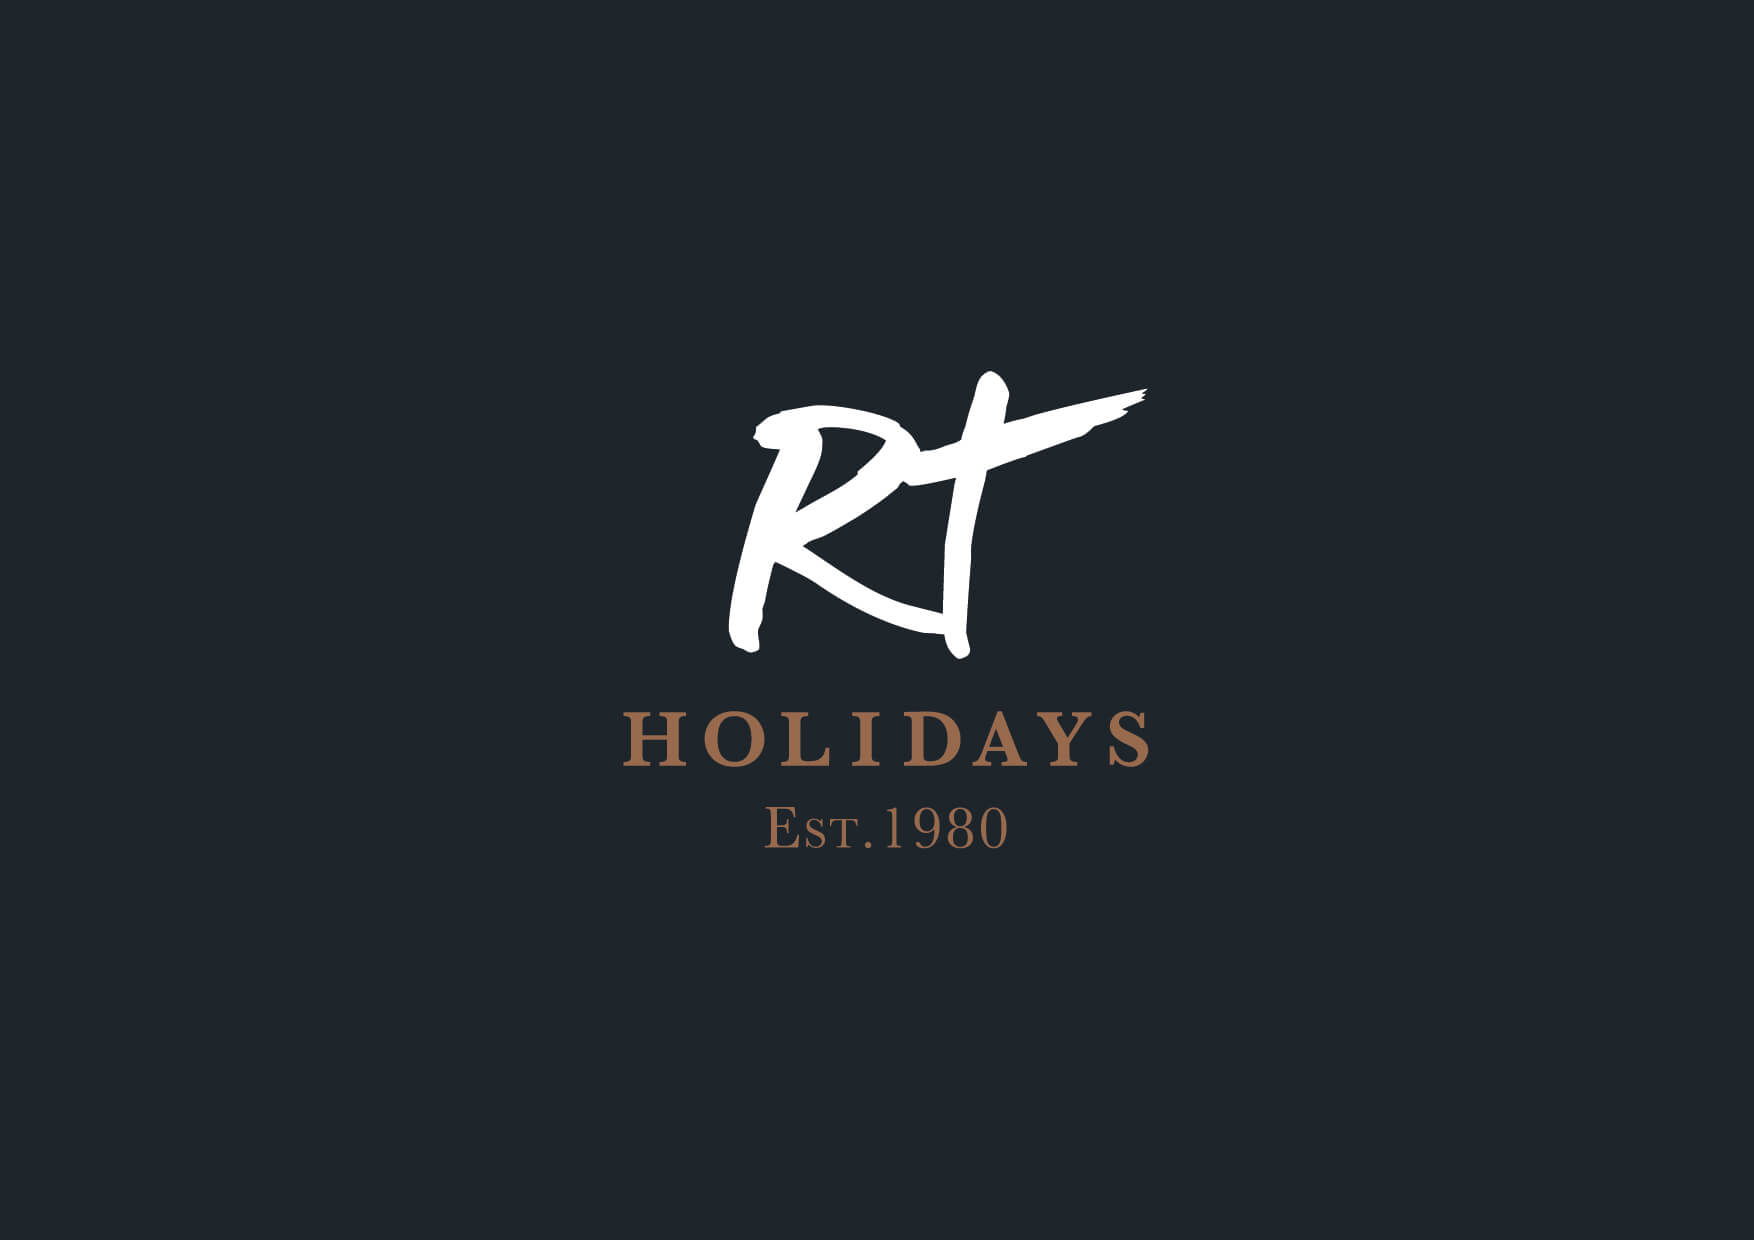 RT Holidays on Black